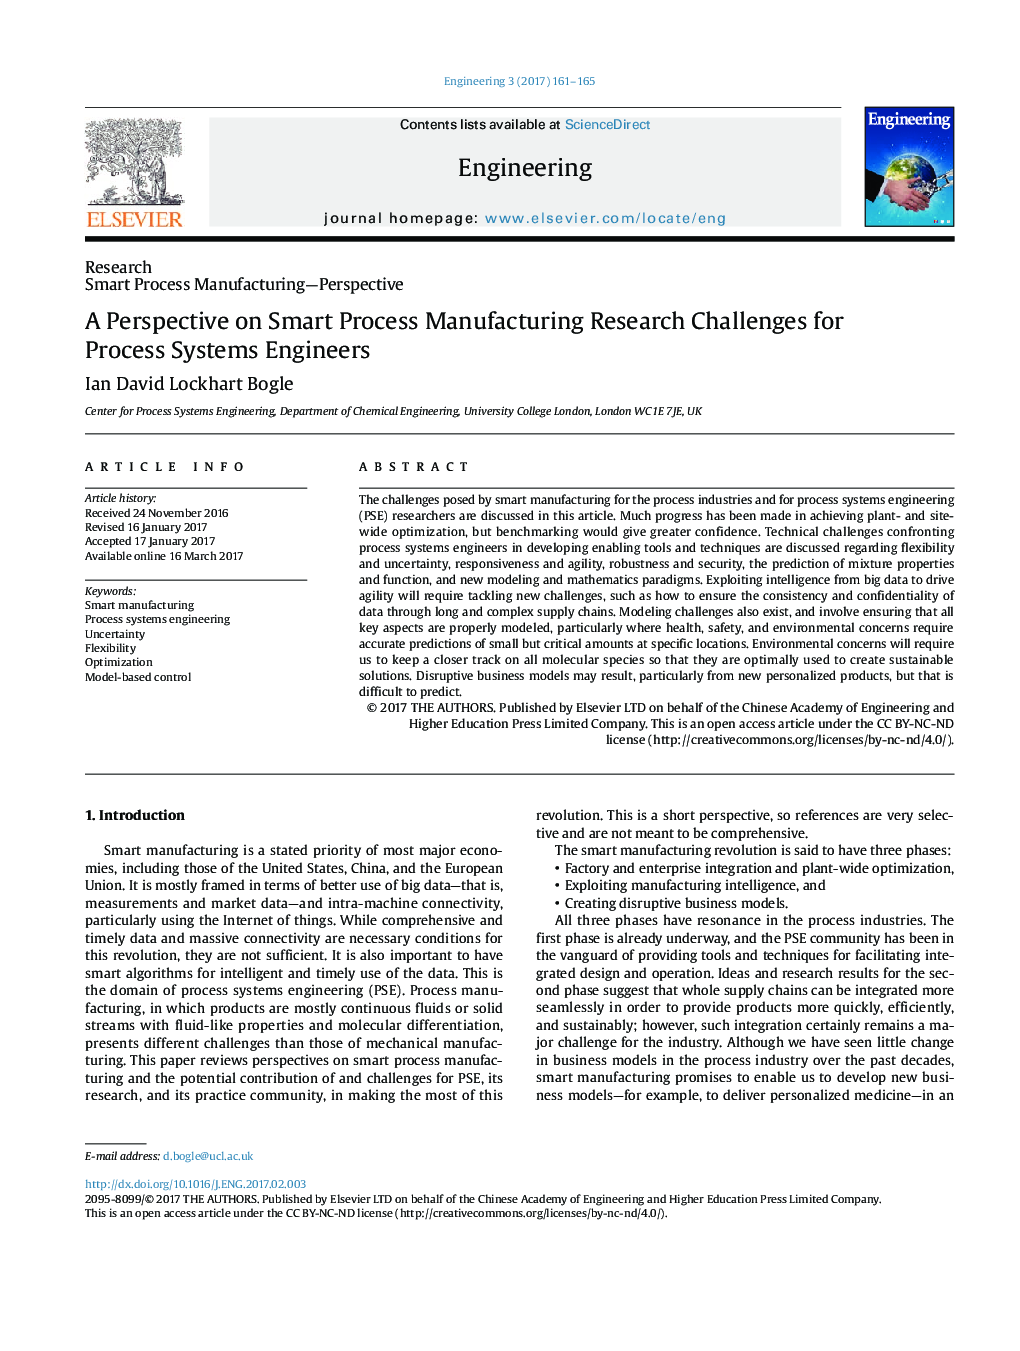 یک چشم انداز در مورد چالش های تحقیقاتی ساختار هوشمند برای مهندسین سیستم های فرایند 